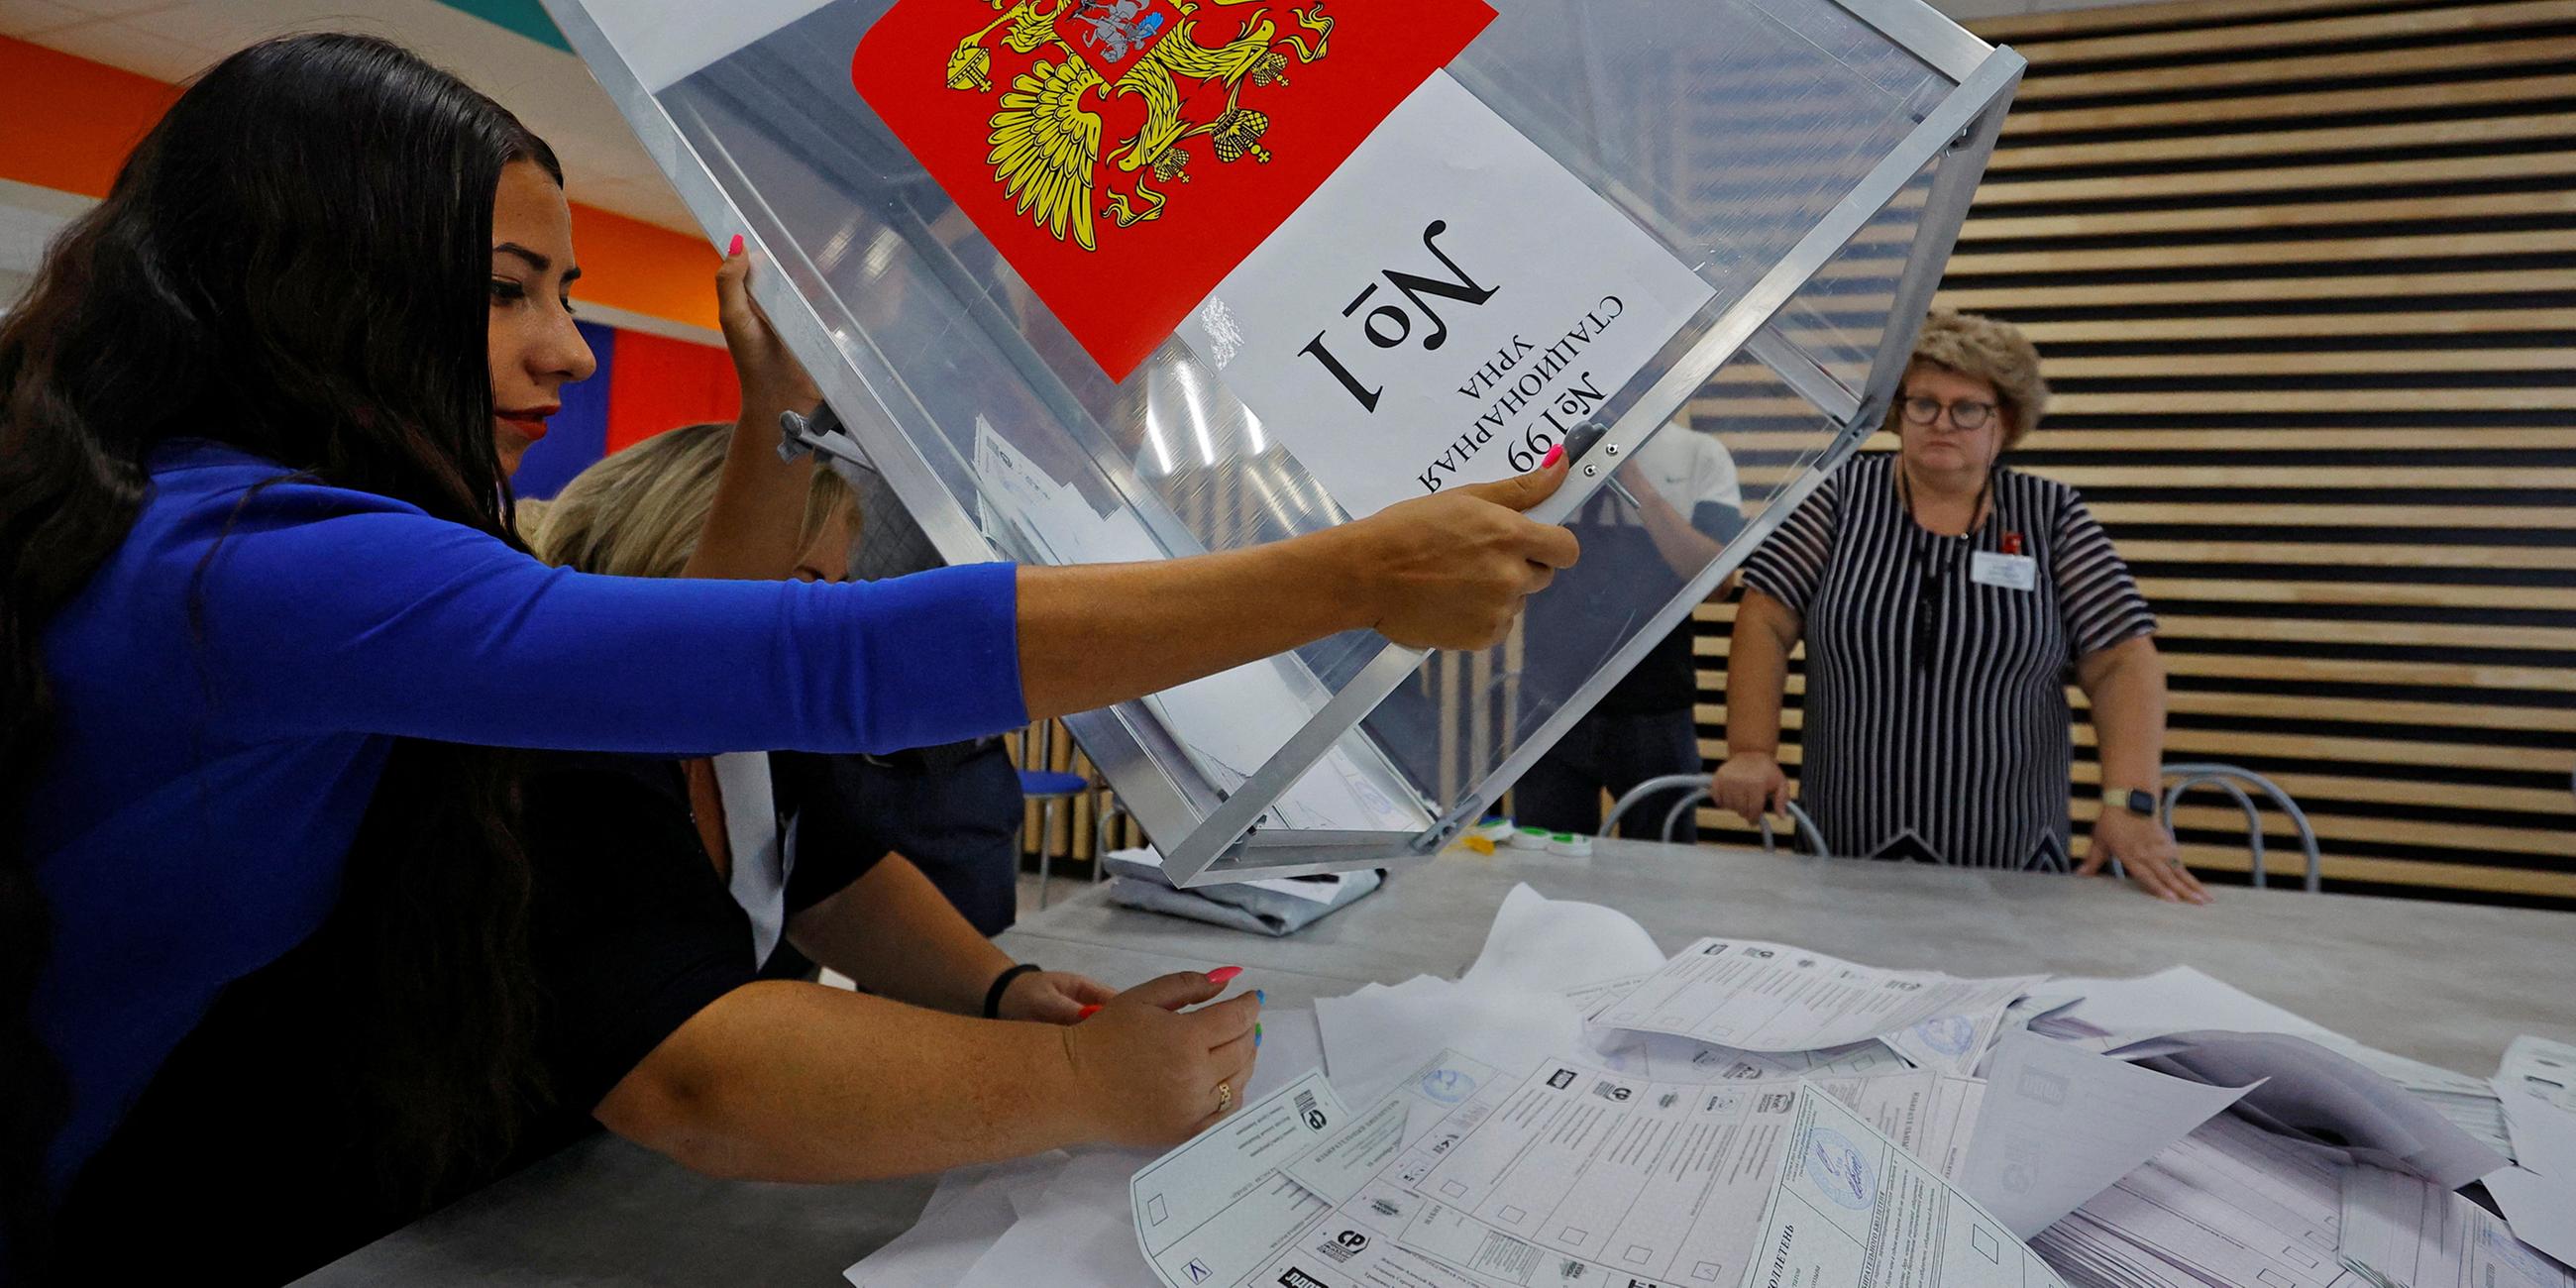 Mitglieder einer Wahlkommission leeren eine Wahlurne, um die Stimmzettel auszuzählen